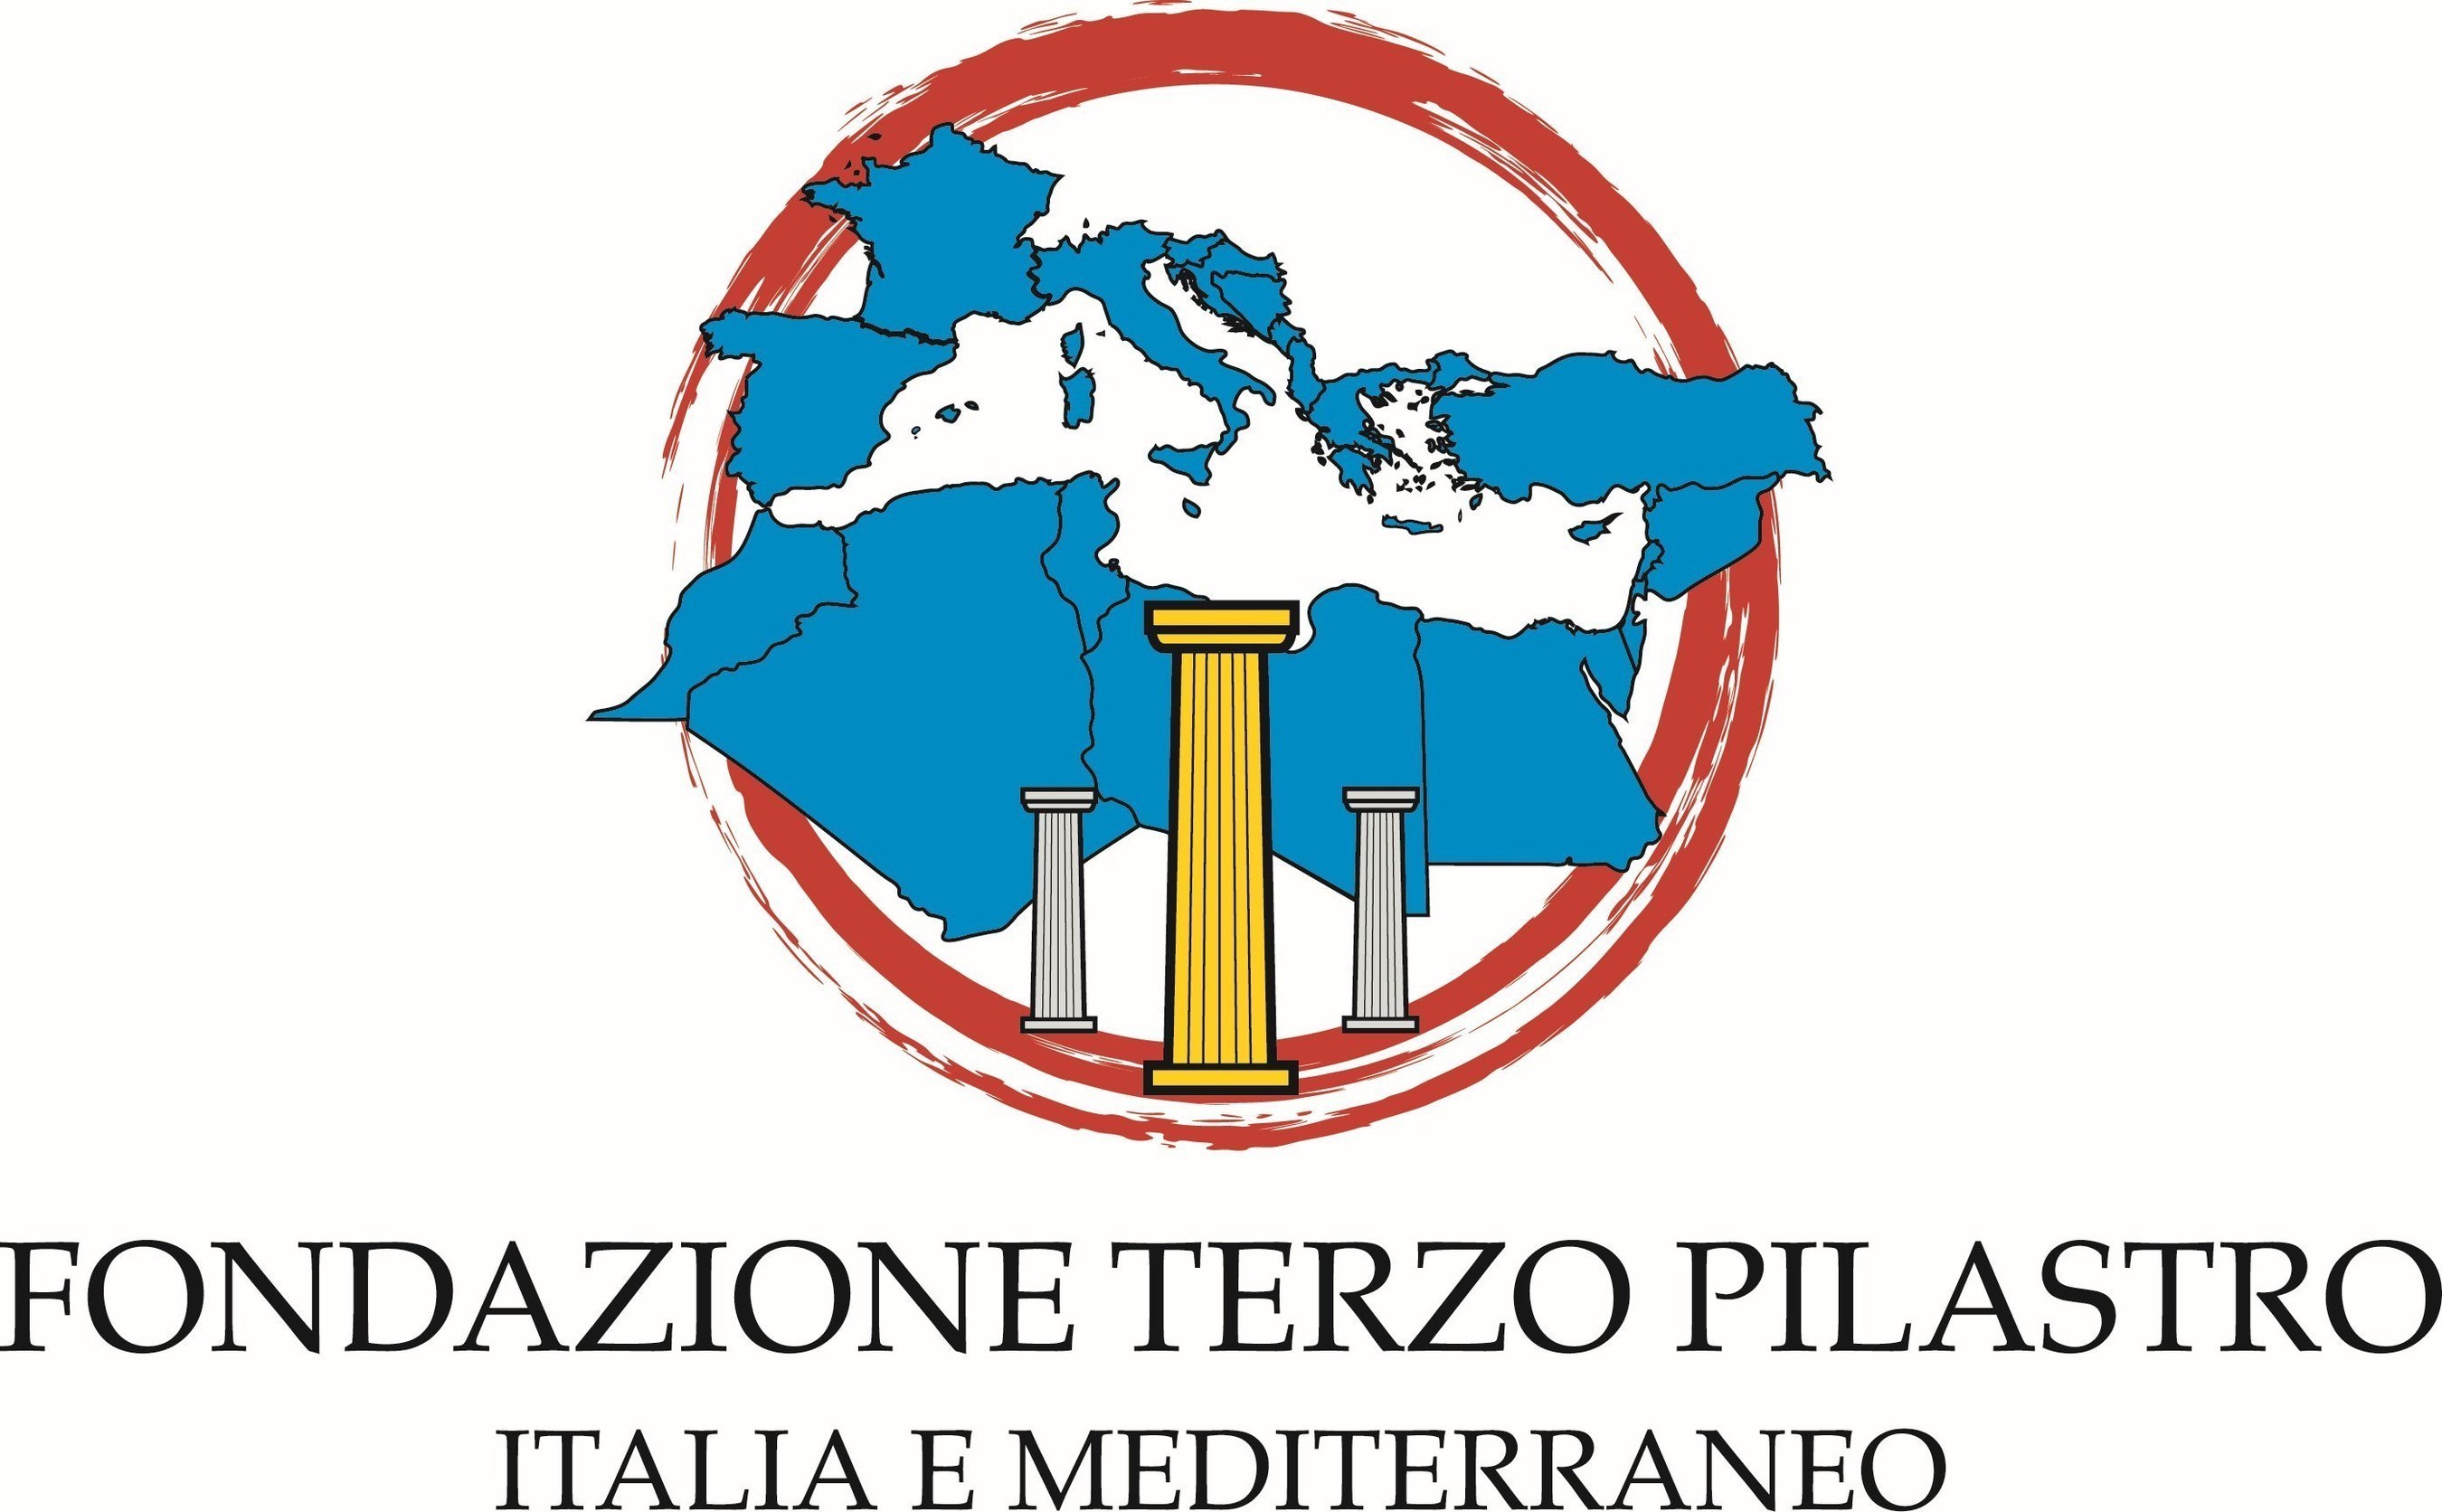 The 'Terzo Pilastro - Italia e Mediterraneo' Foundation (PRNewsFoto/Fondazione Terzo Pilastro) (PRNewsFoto/Fondazione Terzo Pilastro)